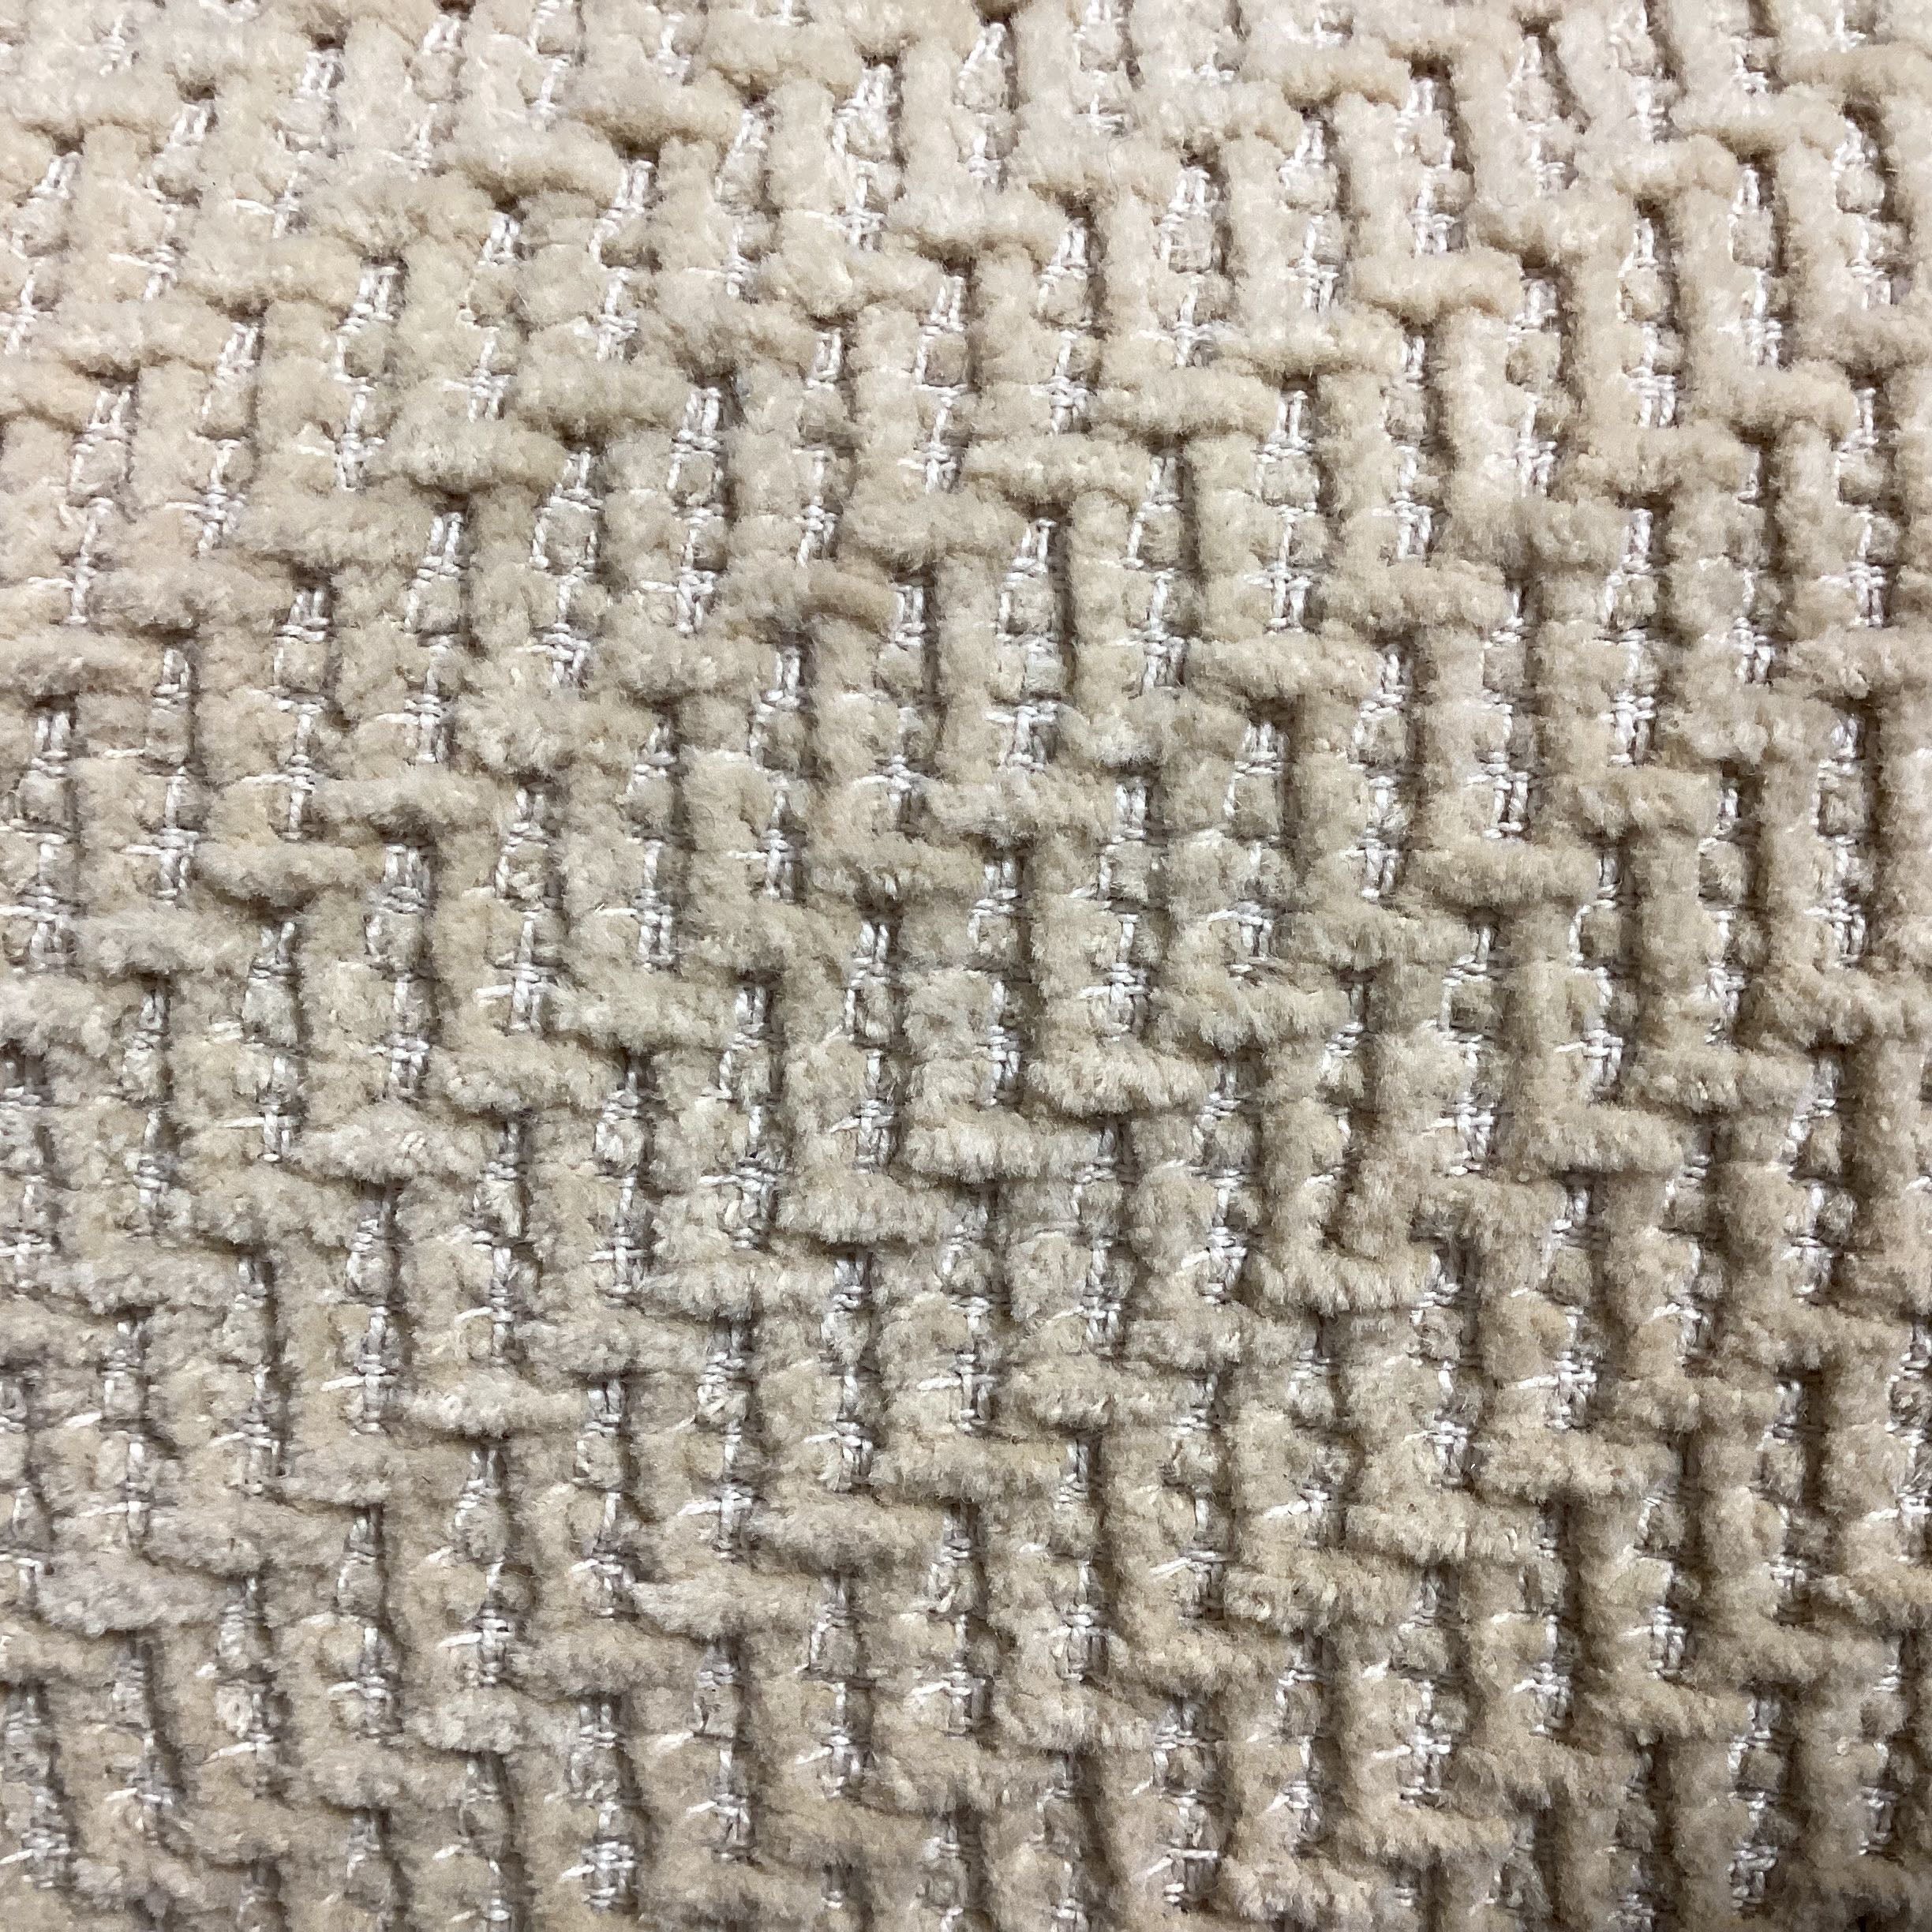 A Rudin Wheat Chenille Raised Design Woven Down Custom Sofa